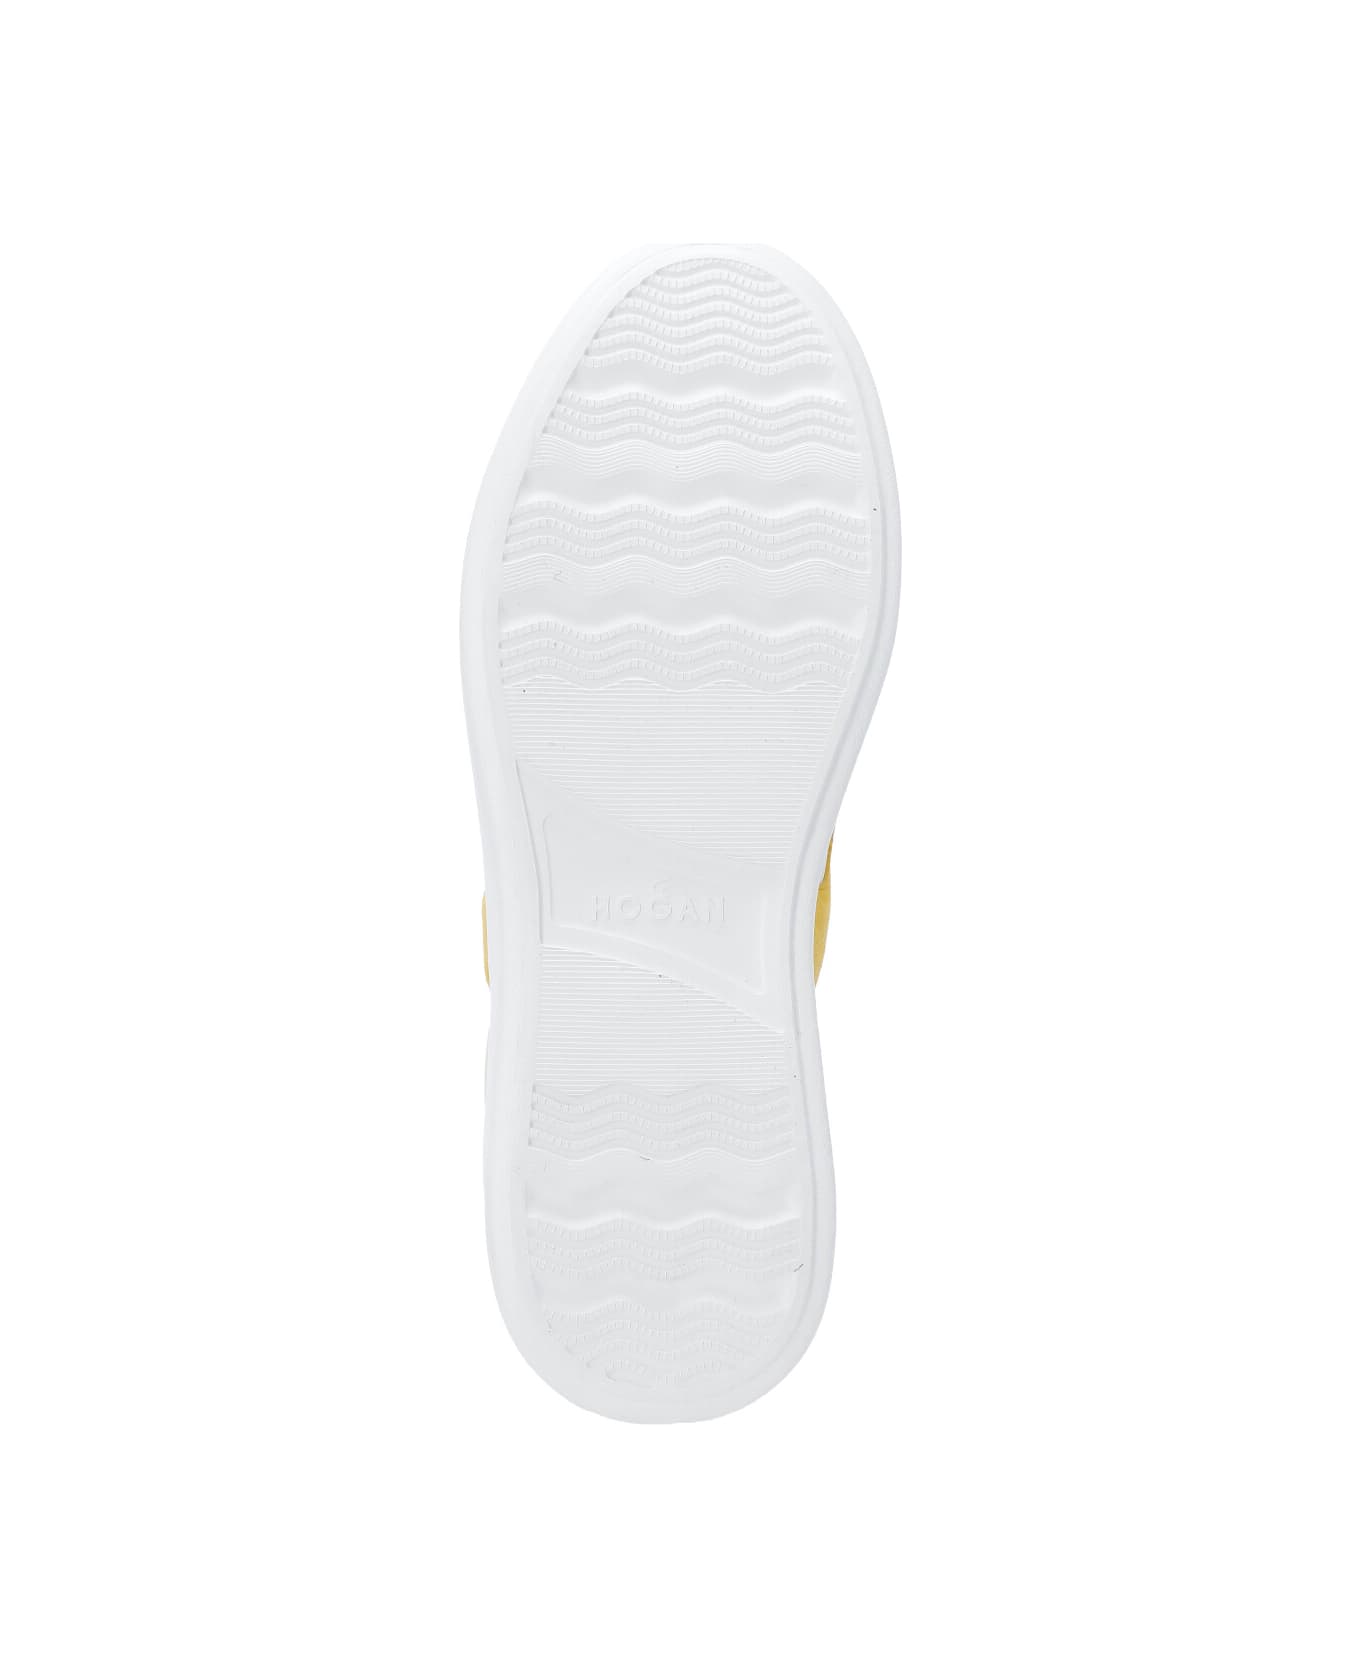 Hogan Rebel Low-top Sneakers - White